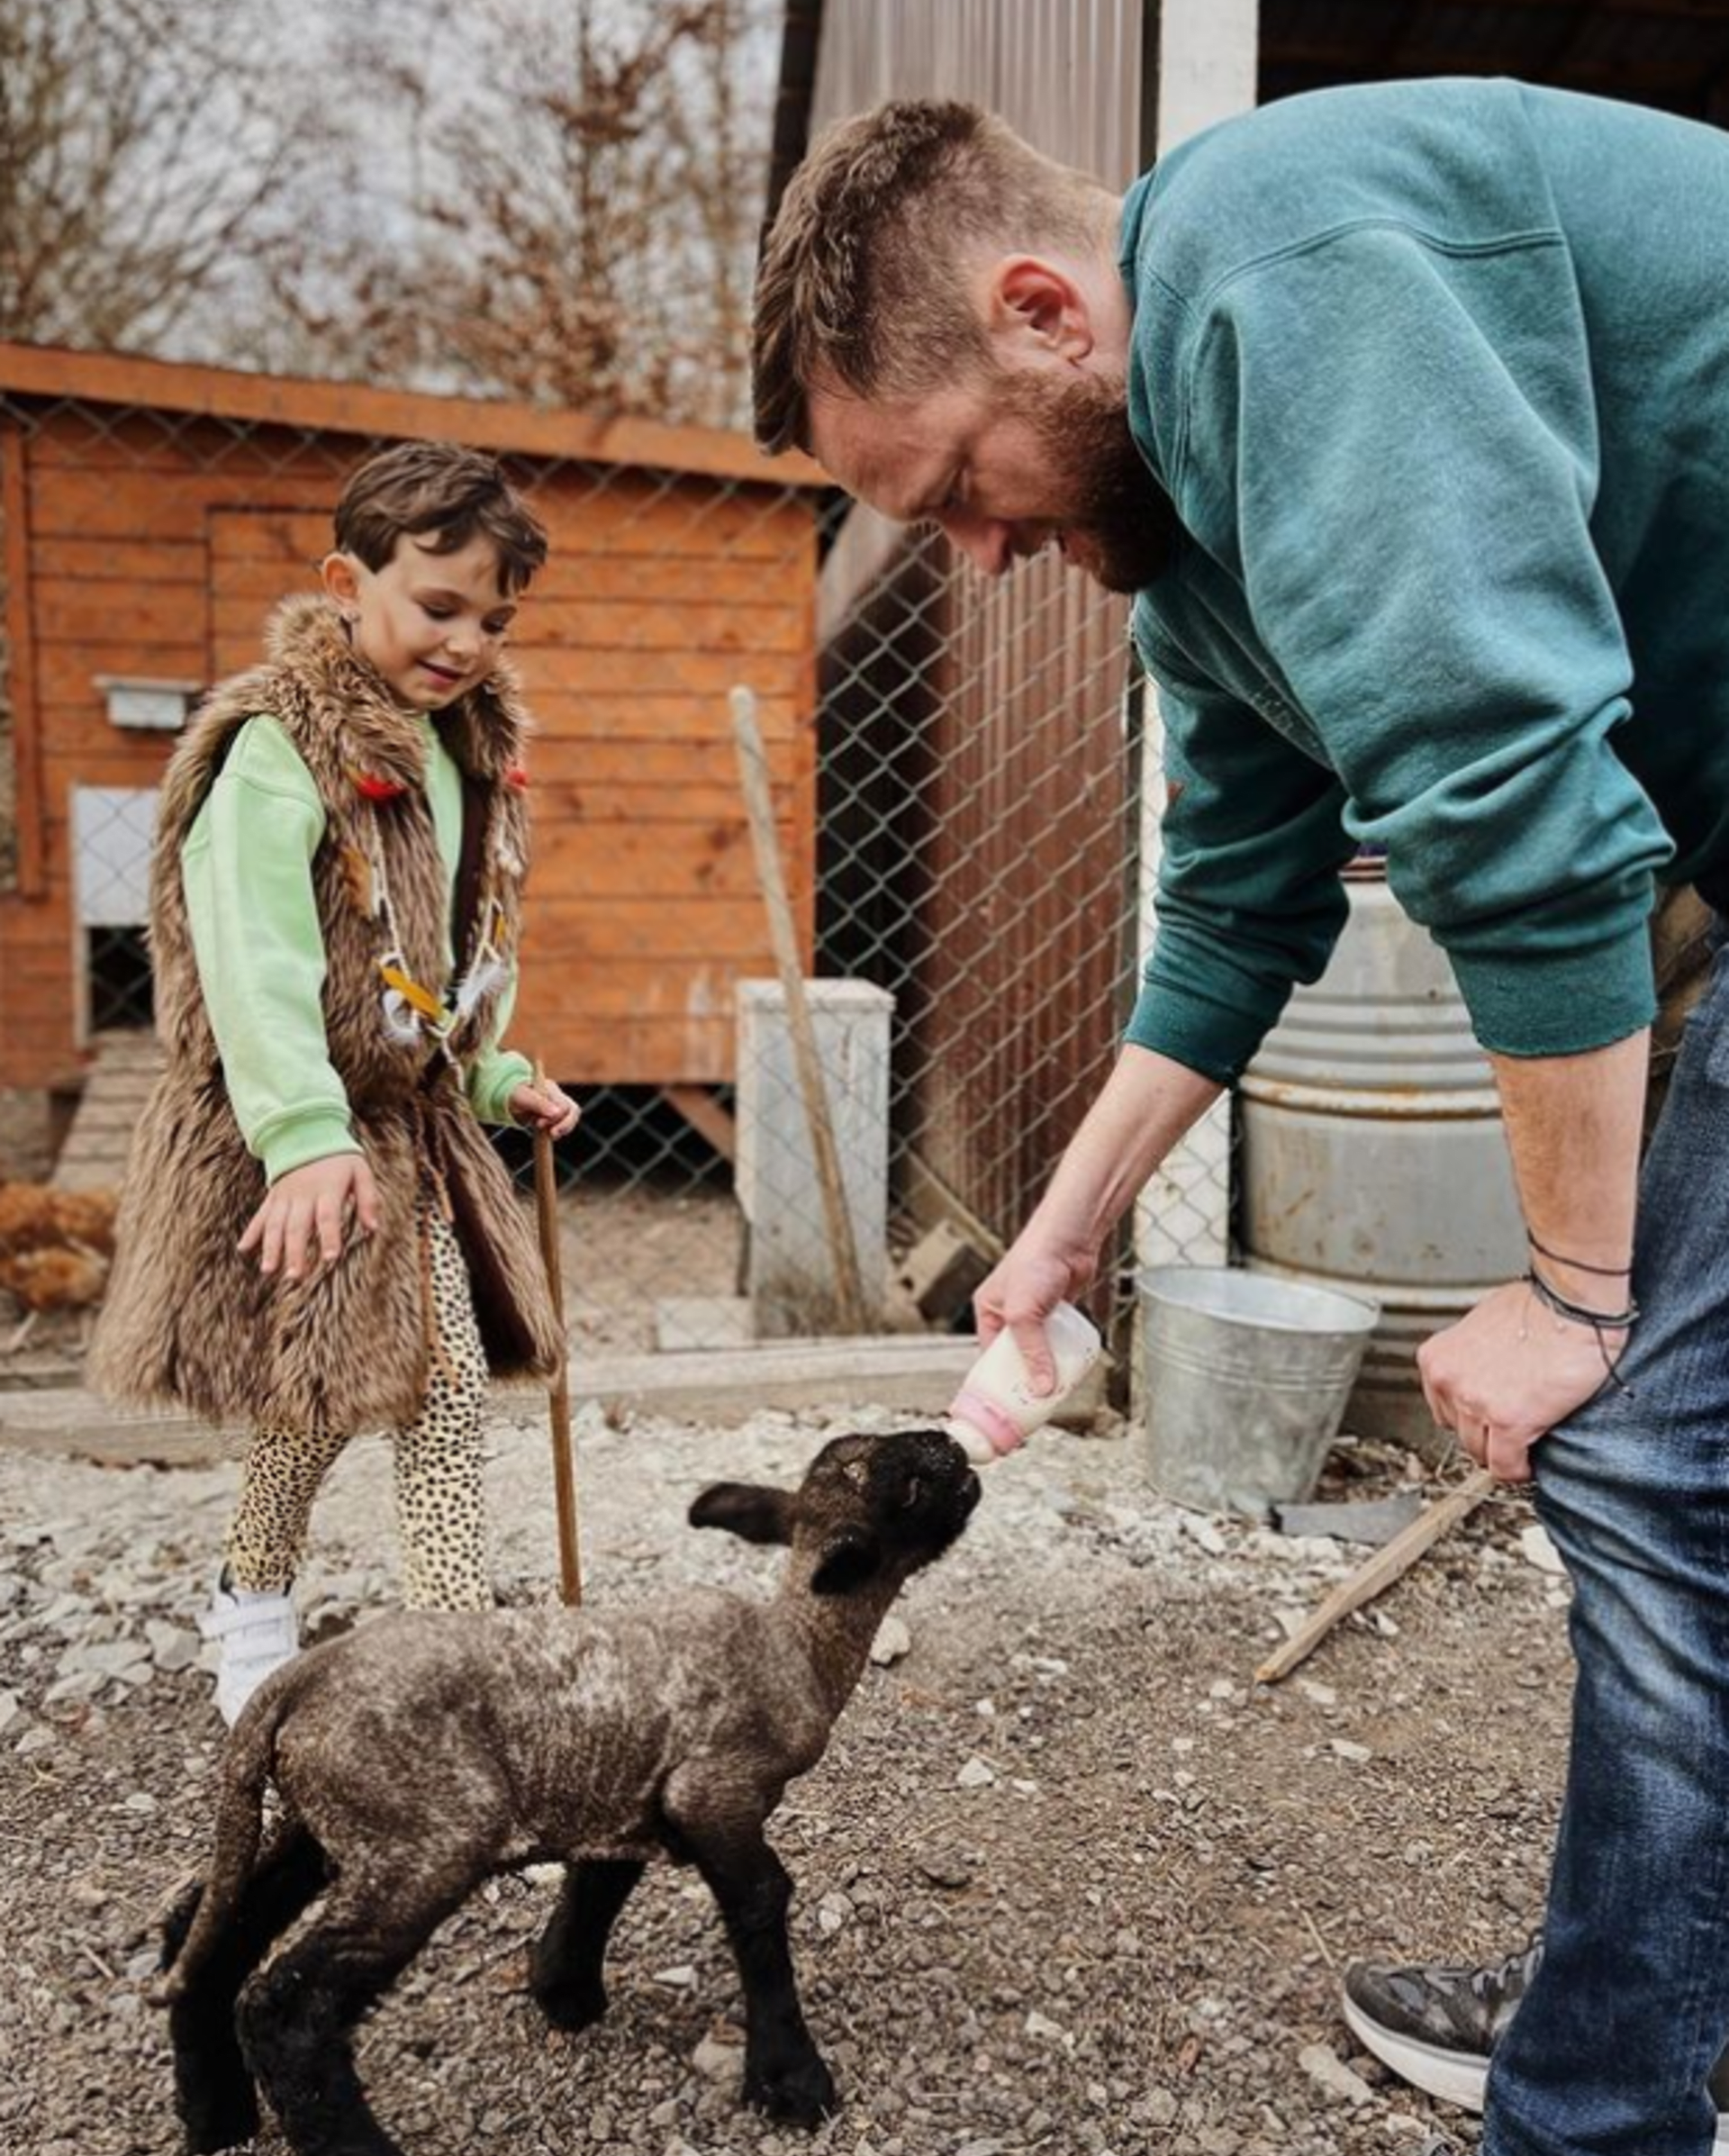 Na svém Instagramu Jitka Boho představila i přítele Tomáše Hřebíka, který je mimo jiné zemědělcem, takže si její dcera může užívat blízkost zvířat